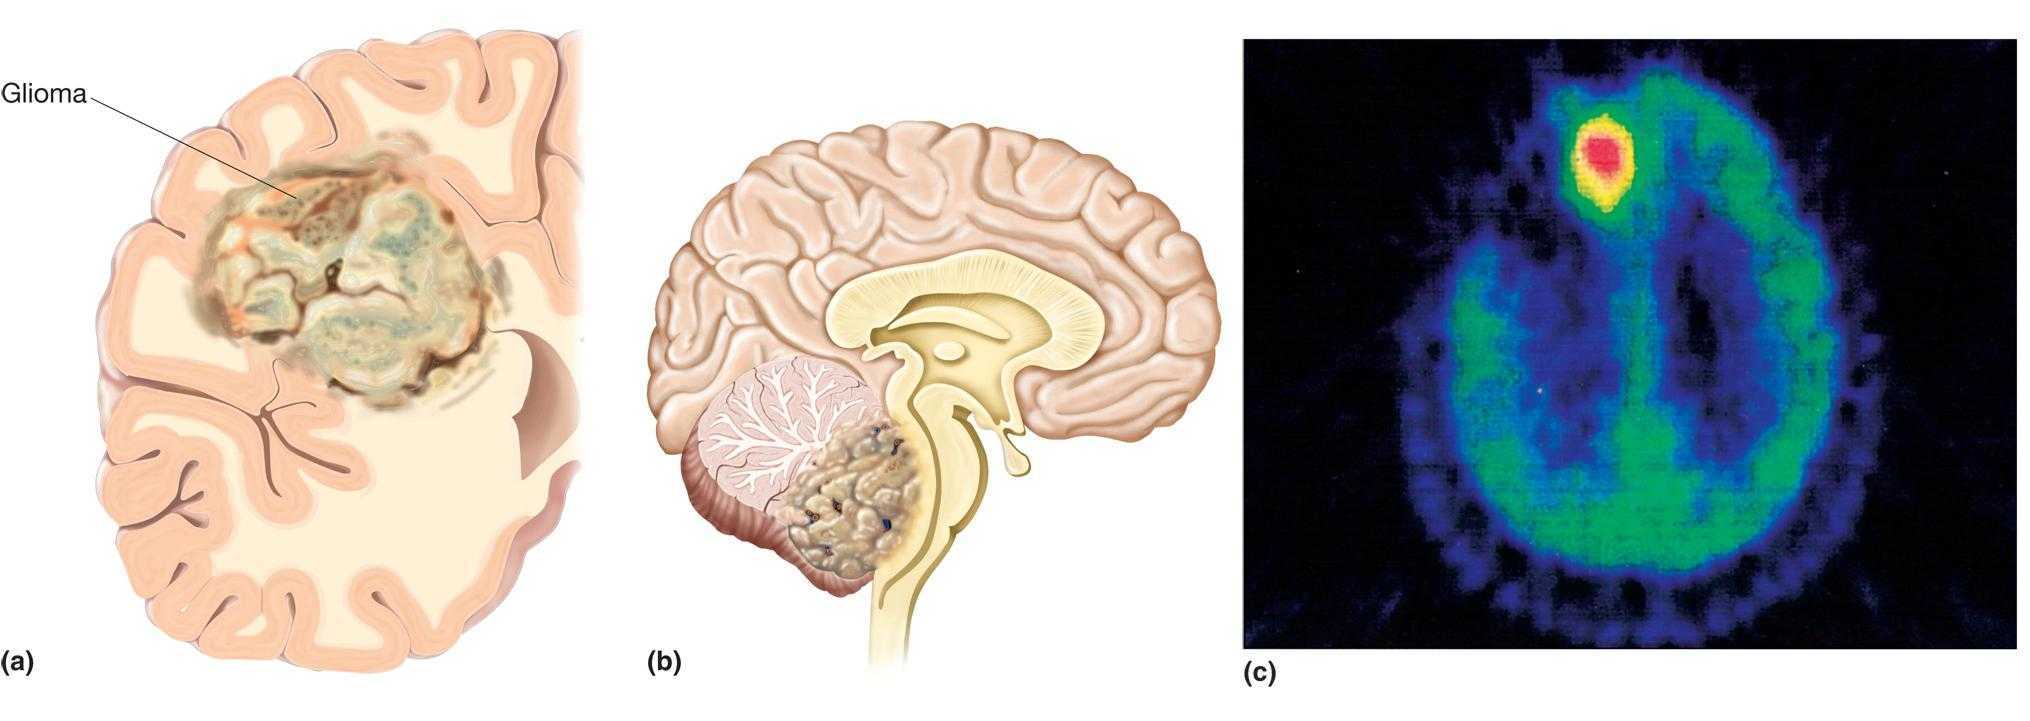 Глиома злокачественная опухоль головного мозга